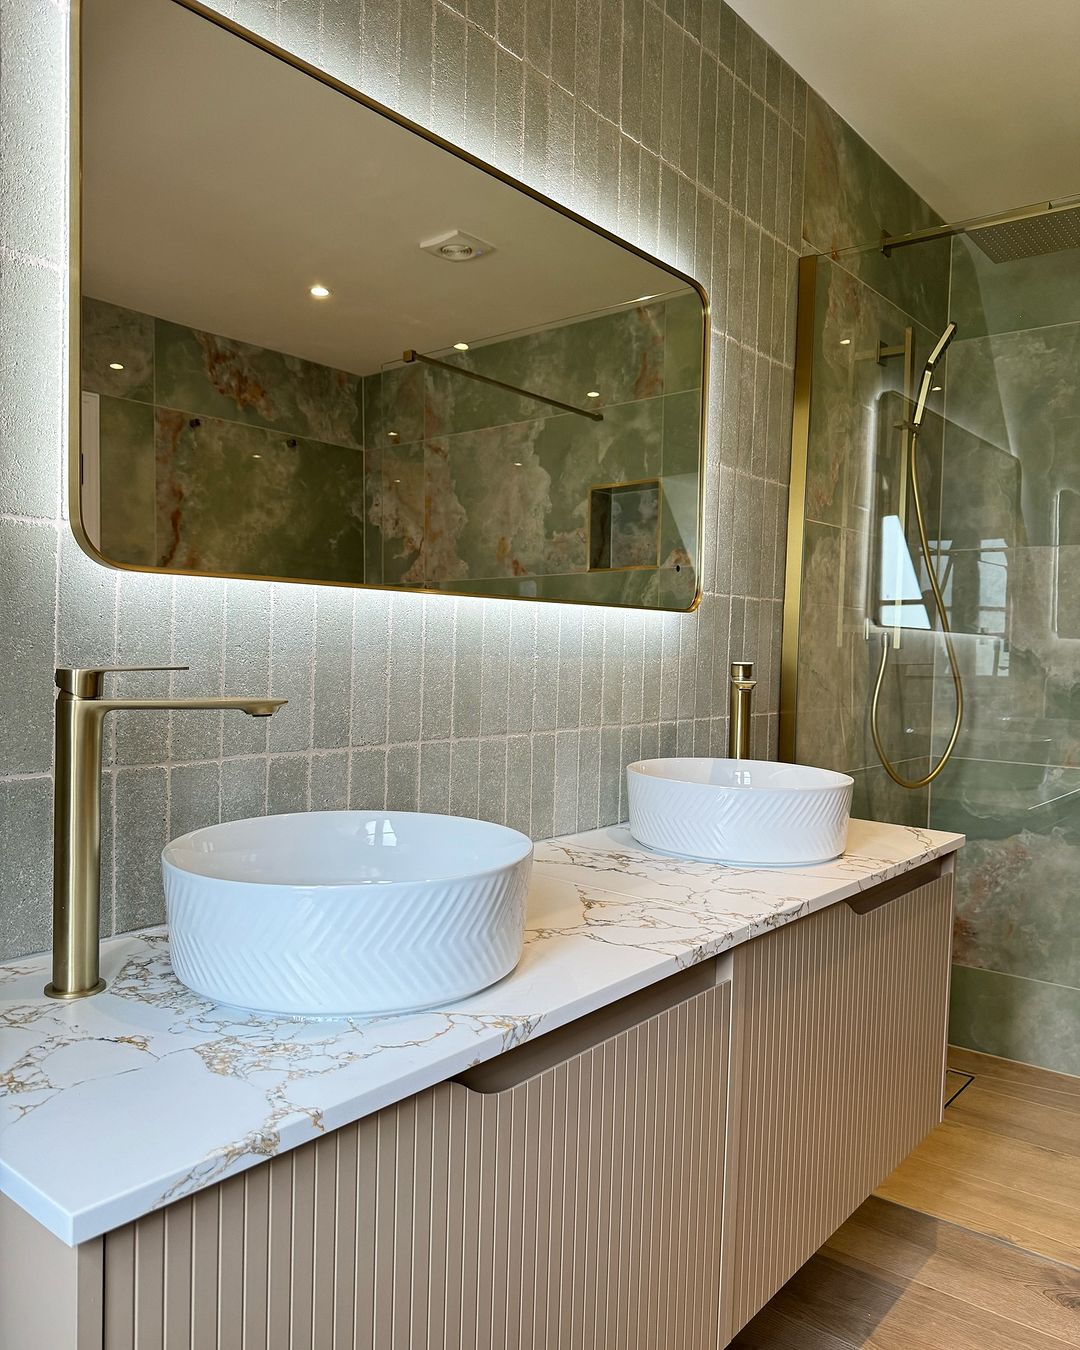 El baño de la pareja luce clásico con encimeras de mármol y lavabos blancos.